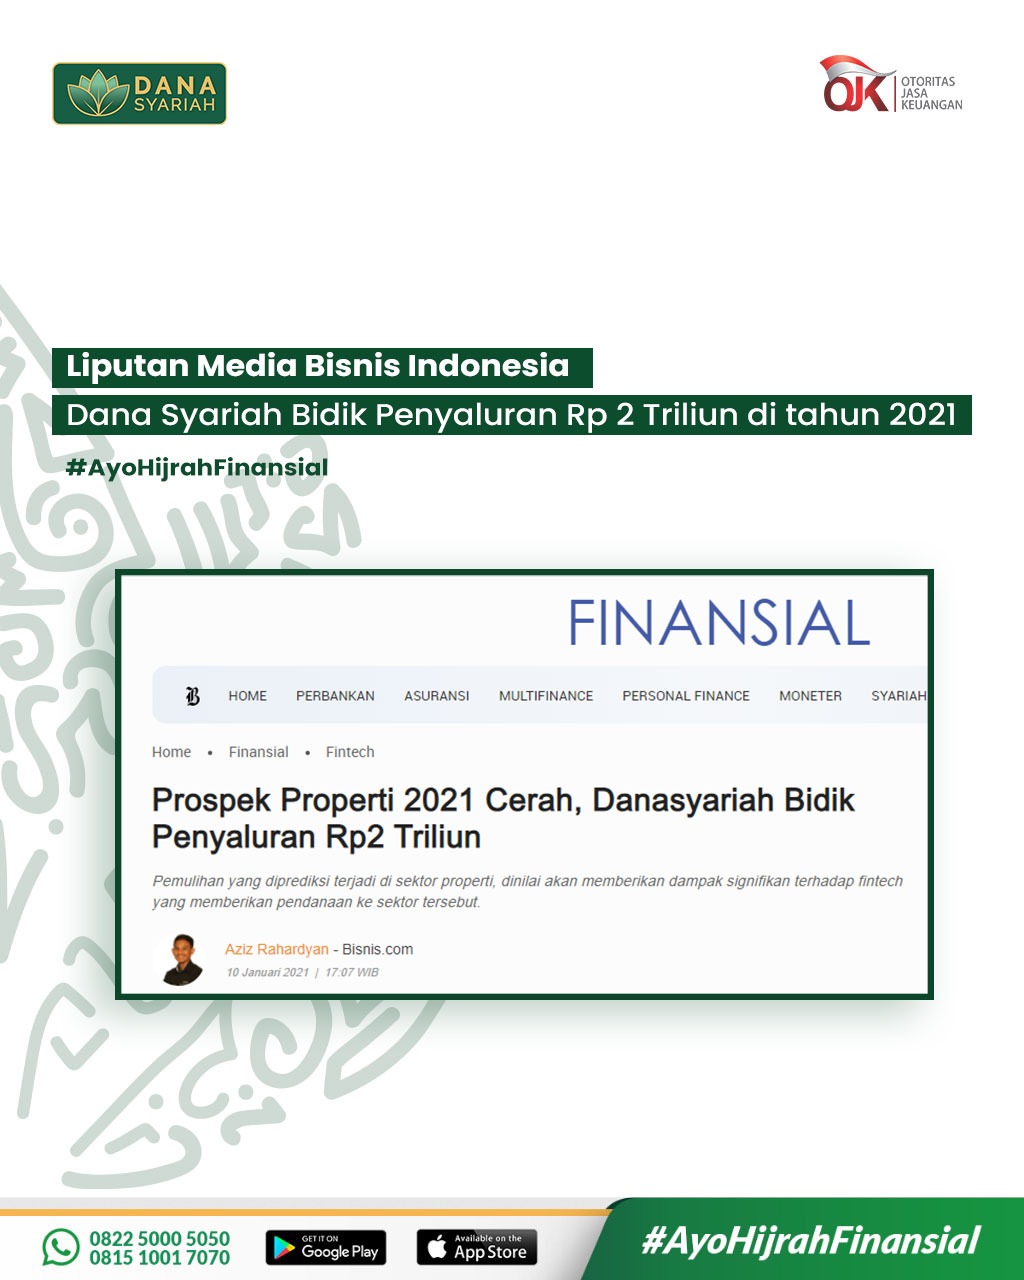 Dana Syariah Prospek Properti 2021 Cerah, Danasyariah Bidik Penyaluran Rp2 Triliun